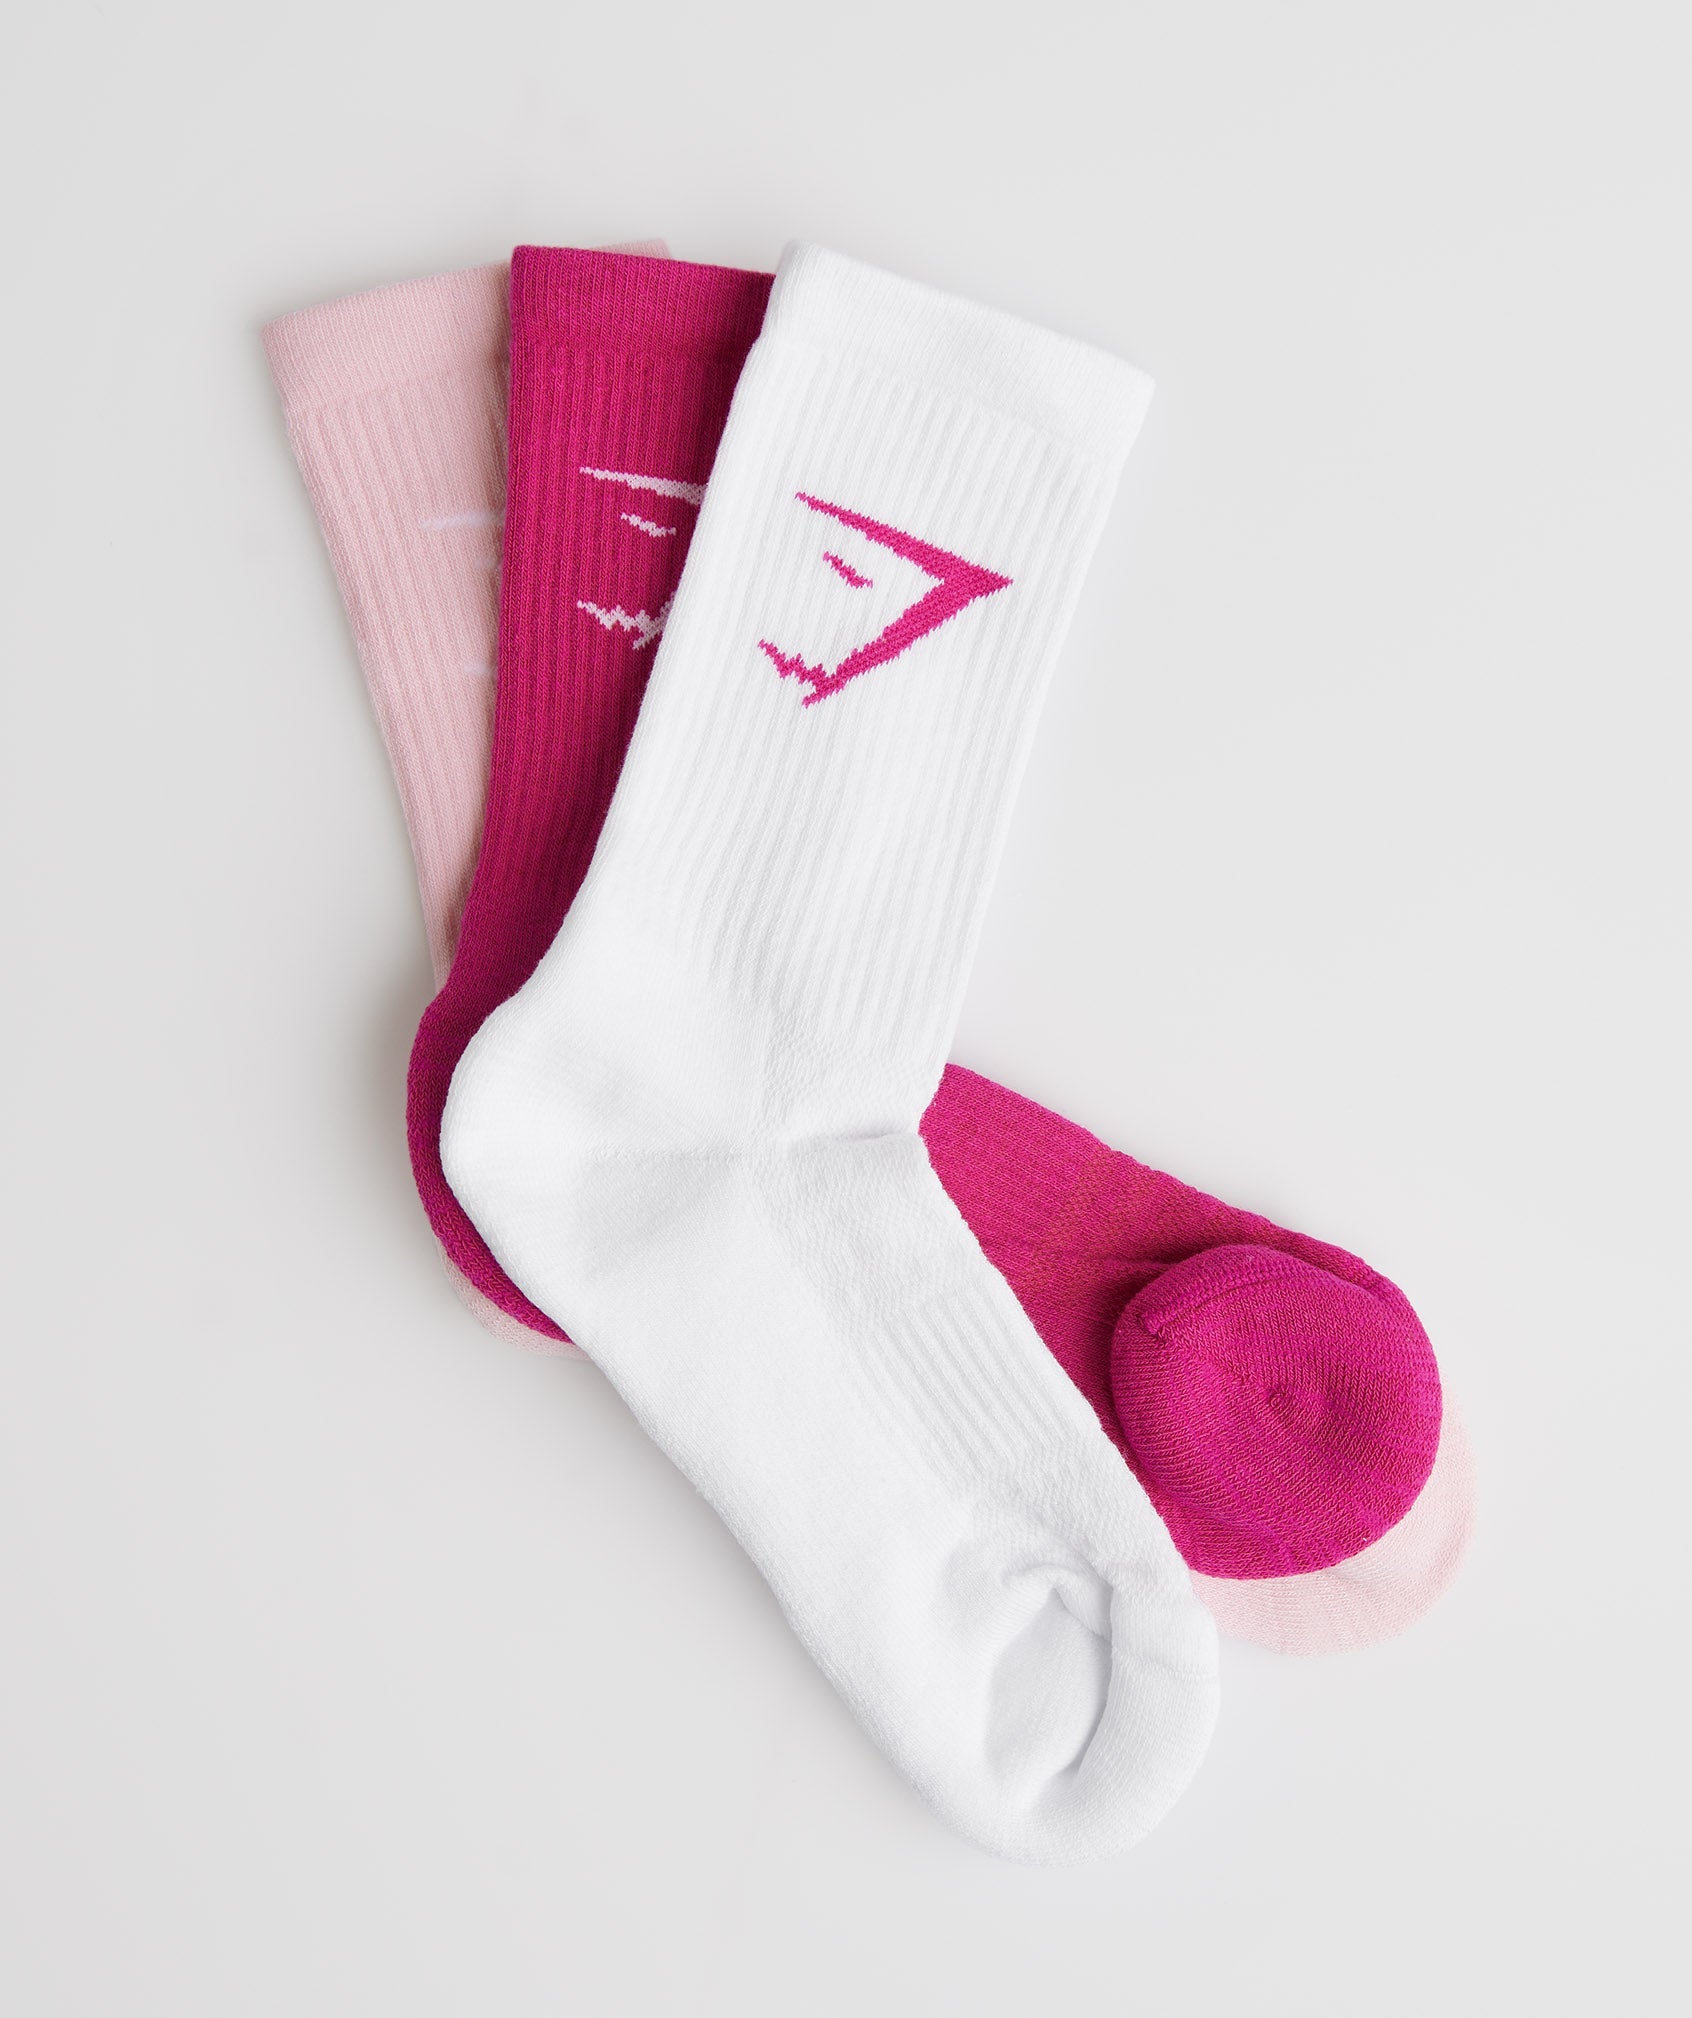 Crew Socks 3pk in Magenta Pink/White/Sweet Pink - view 2